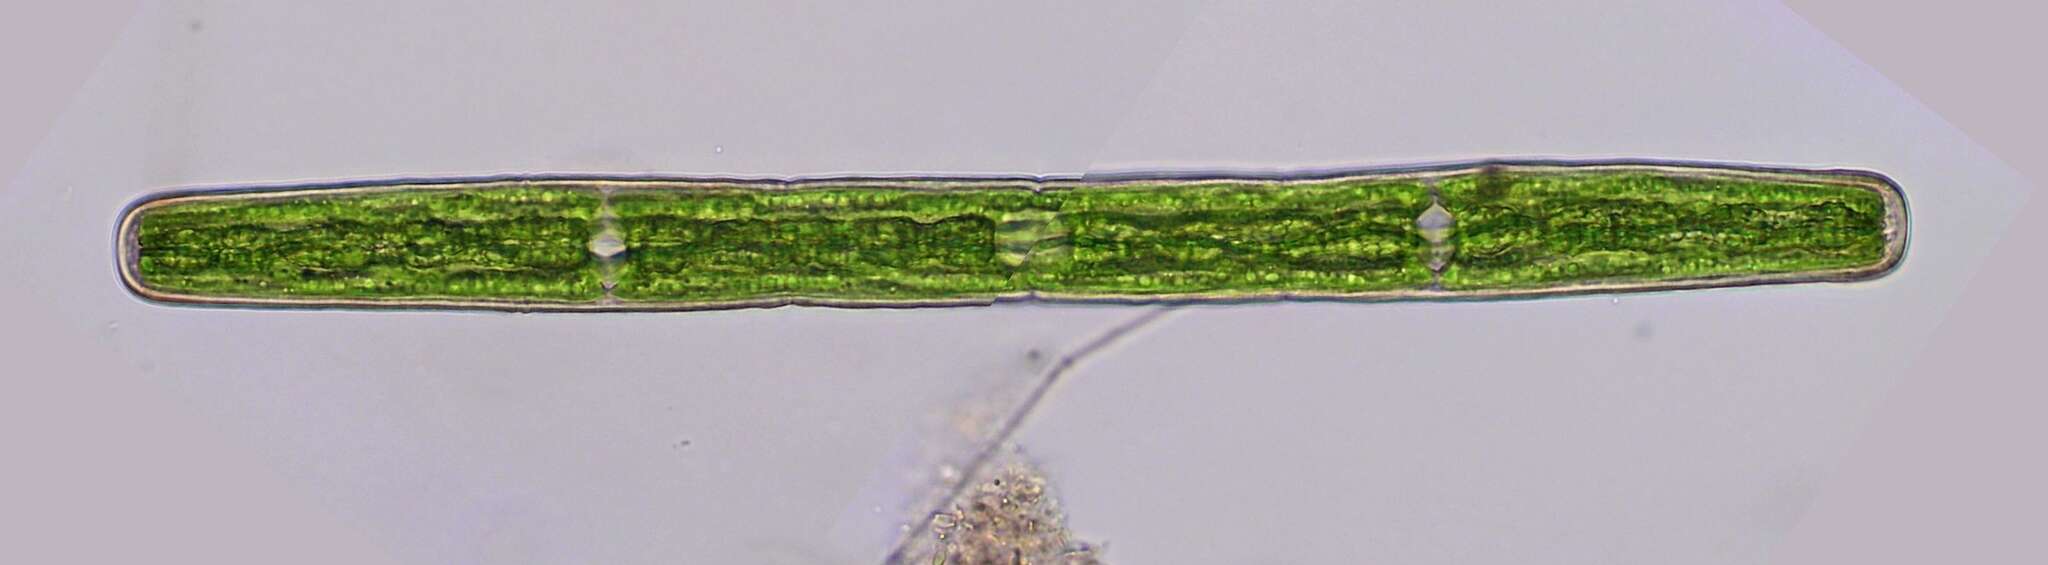 Image of Penium spirostriolatum